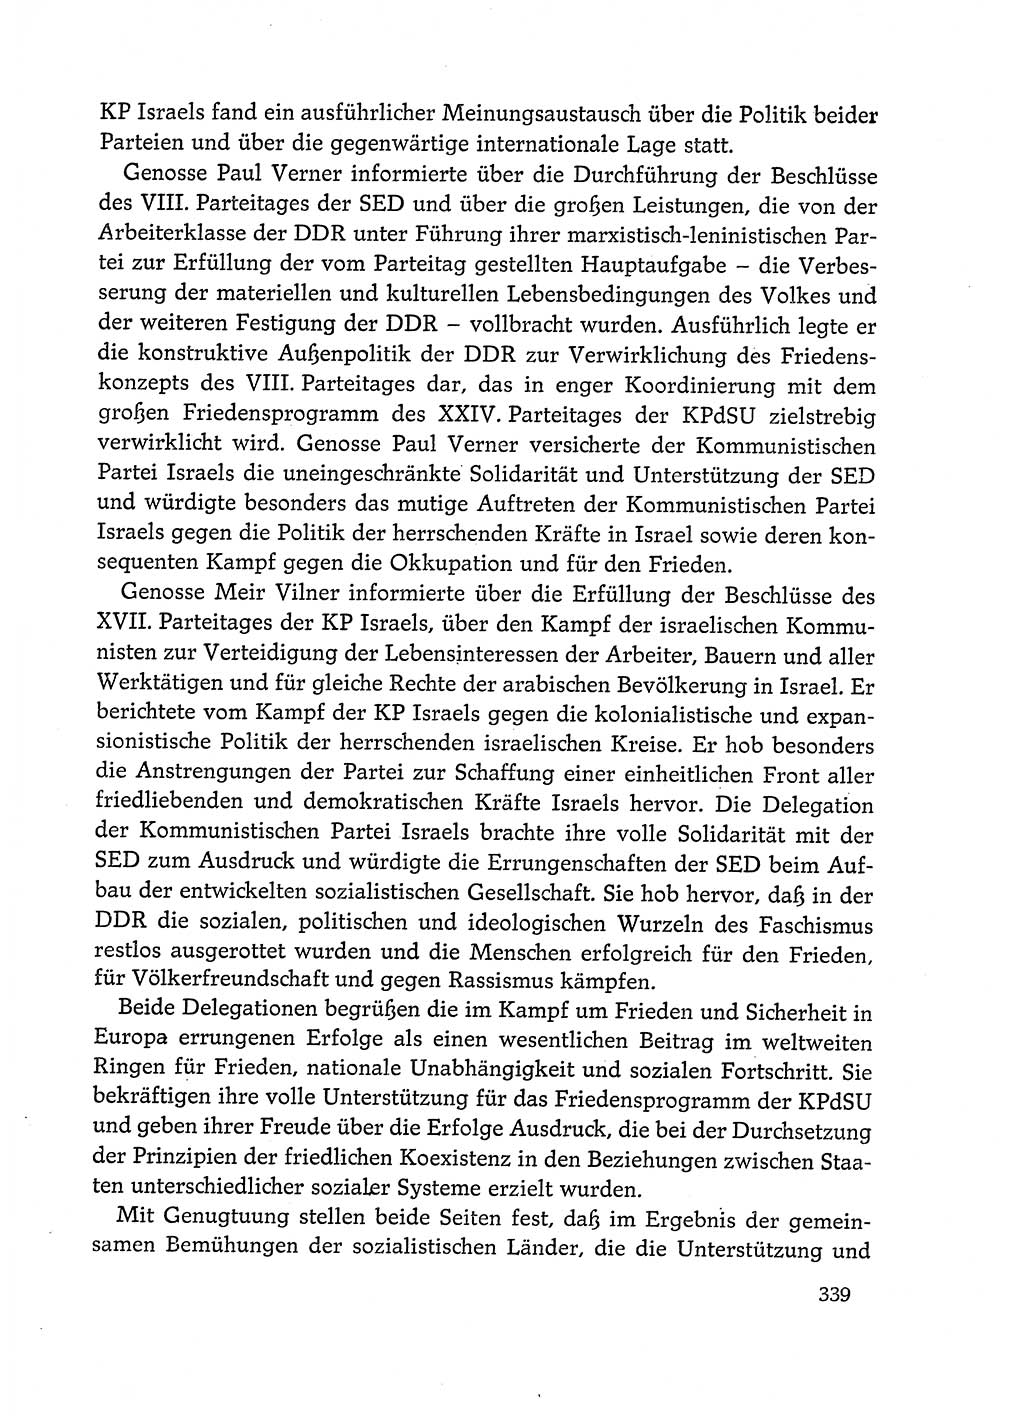 Dokumente der Sozialistischen Einheitspartei Deutschlands (SED) [Deutsche Demokratische Republik (DDR)] 1972-1973, Seite 339 (Dok. SED DDR 1972-1973, S. 339)